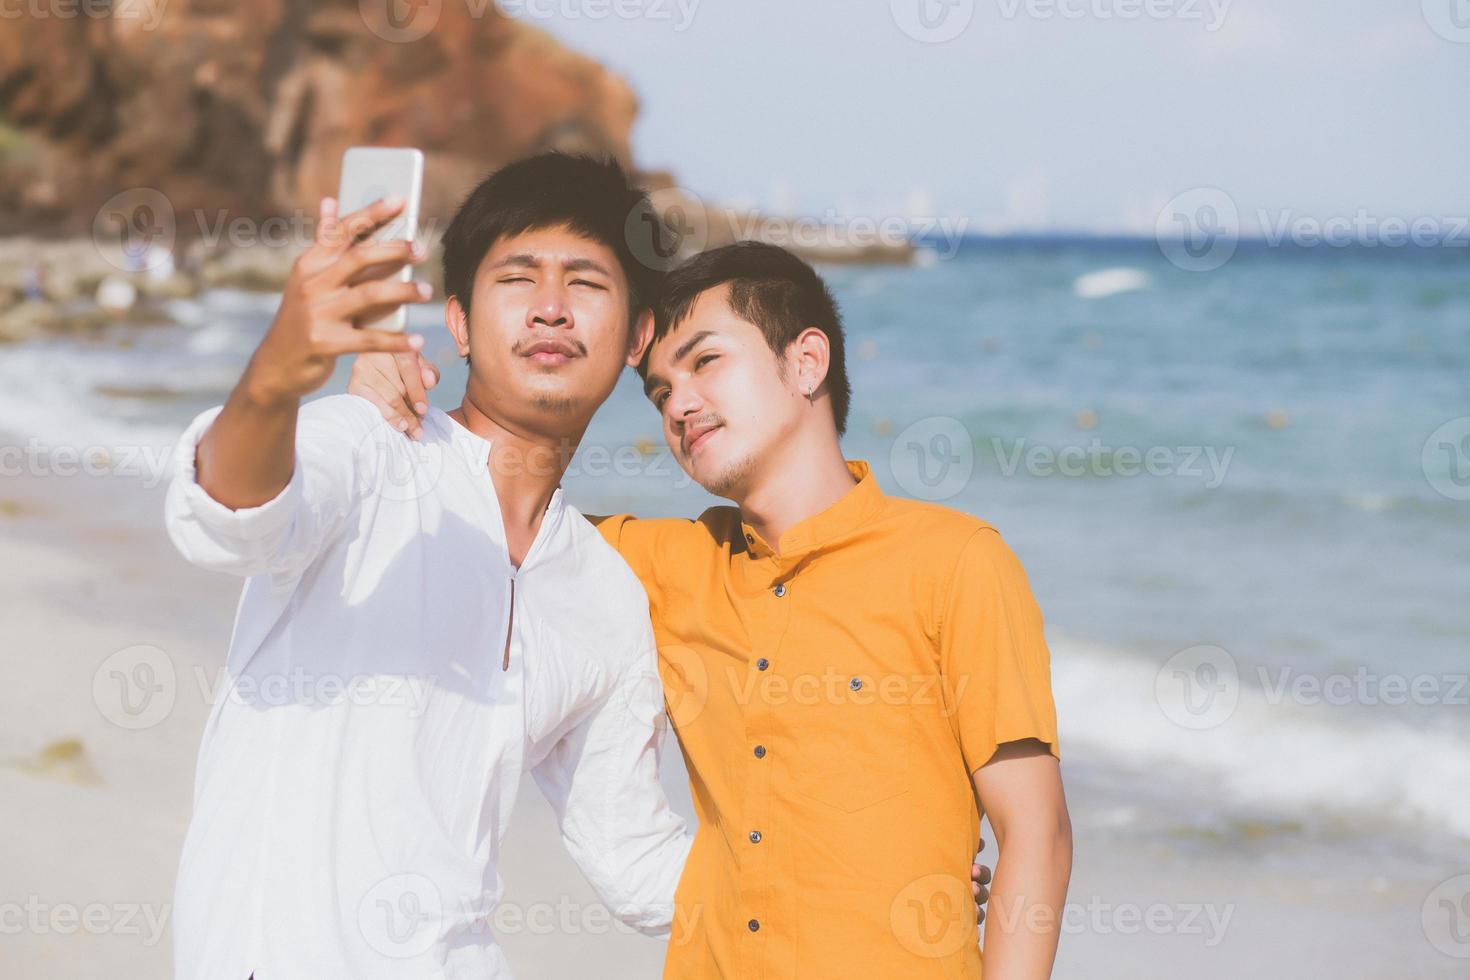 retrato gay jovem casal sorrindo tirando uma foto de selfie junto com telefone celular inteligente na praia, amante homossexual lgbt nas férias no mar, dois homens vão viajar, conceito de férias.